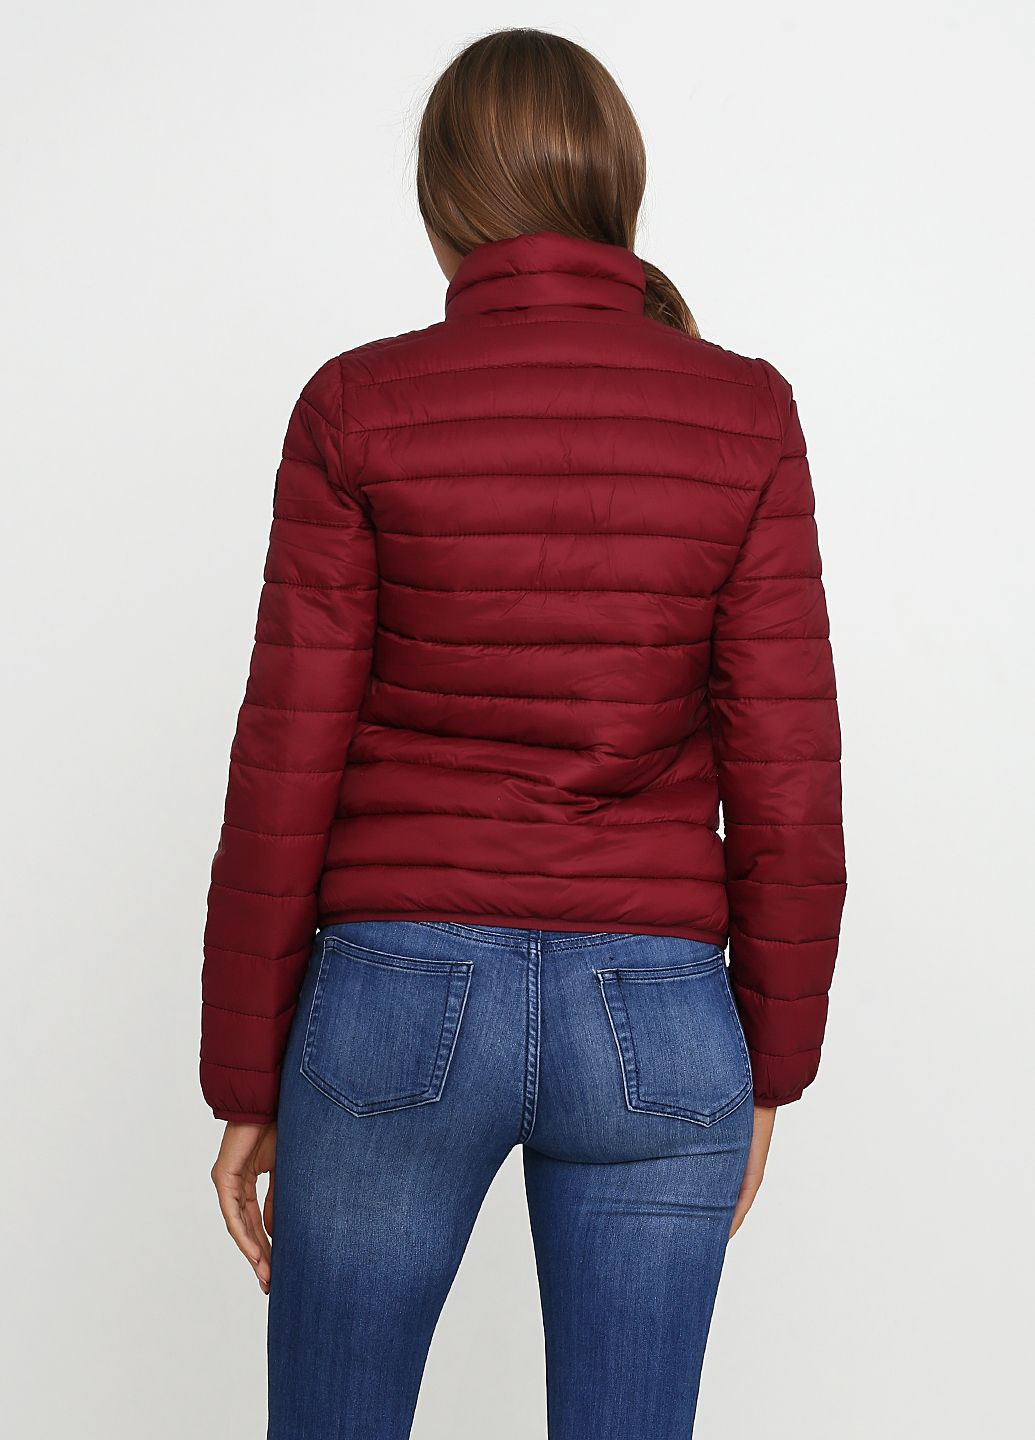 Бордовая демисезонная куртка демисезонная - женская куртка af5413w Abercrombie & Fitch